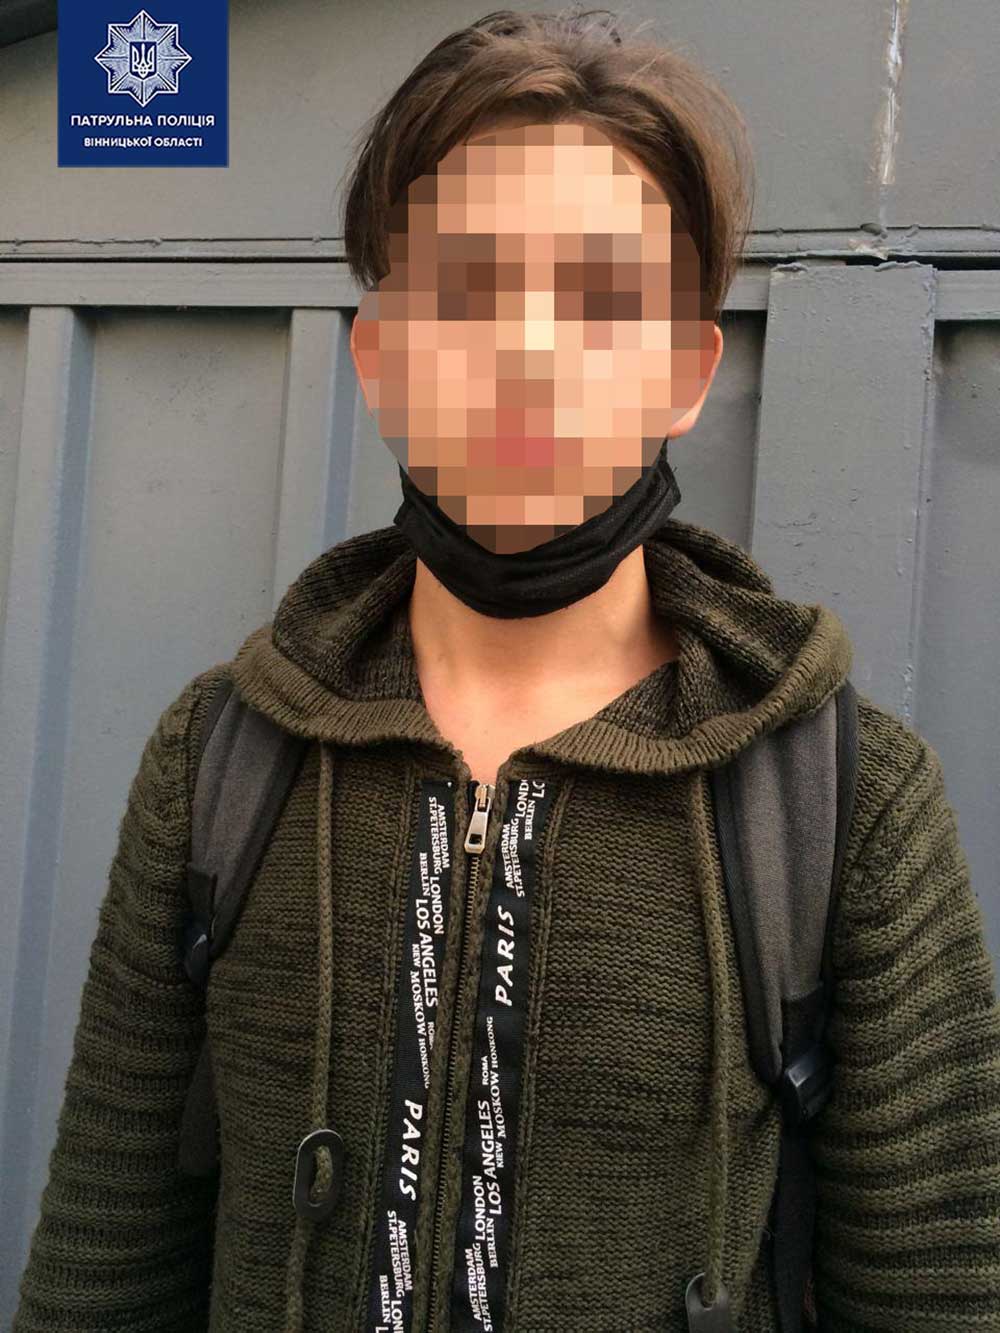 У Вінниці затримали 18-річного хлопця з наркотиками